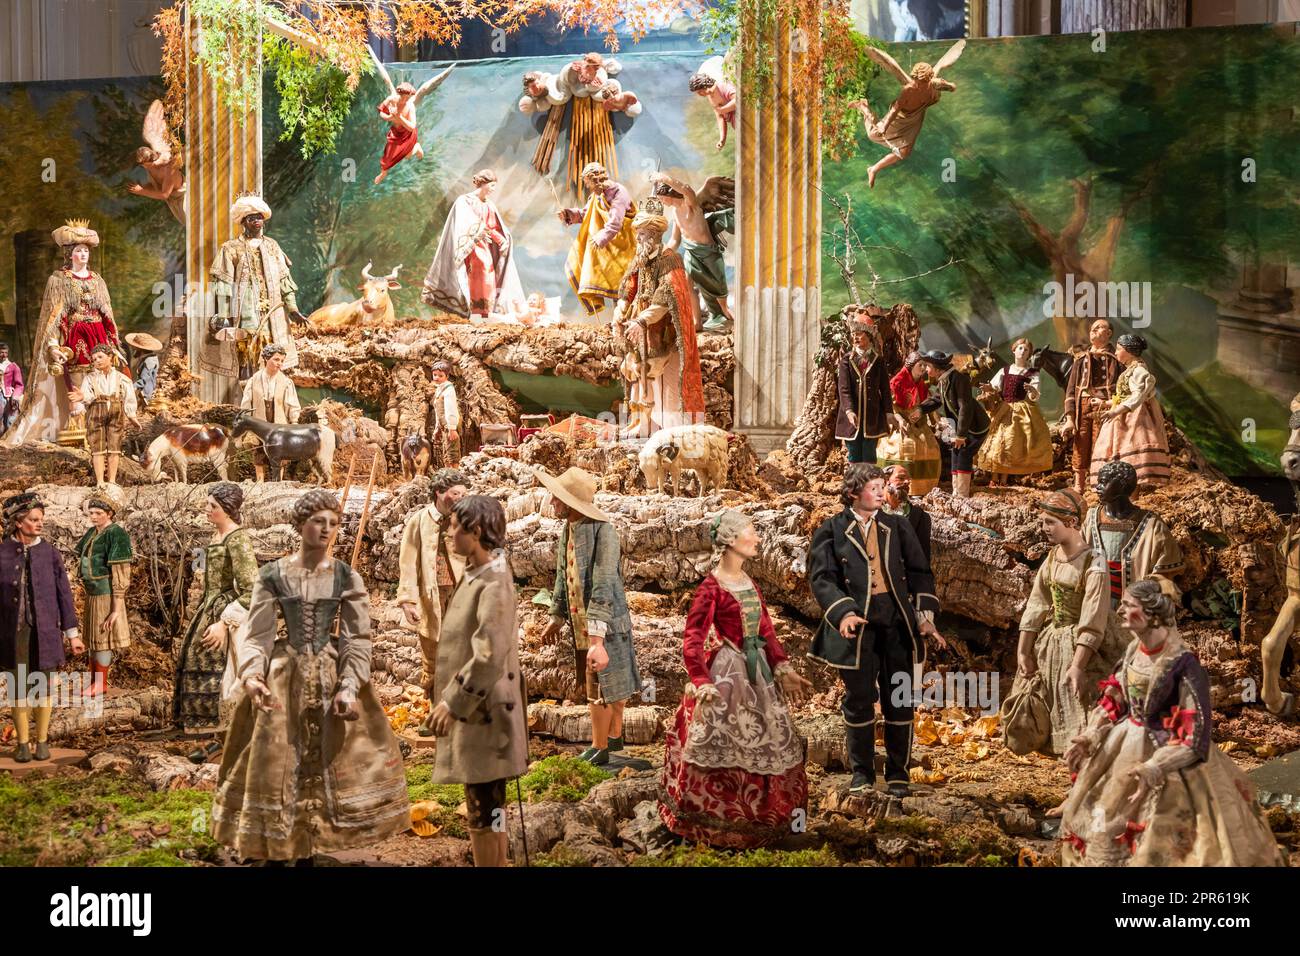 Berceau italien - nommé presepe - avec la nativité. Scène religieuse traditionnelle de Noël. Banque D'Images